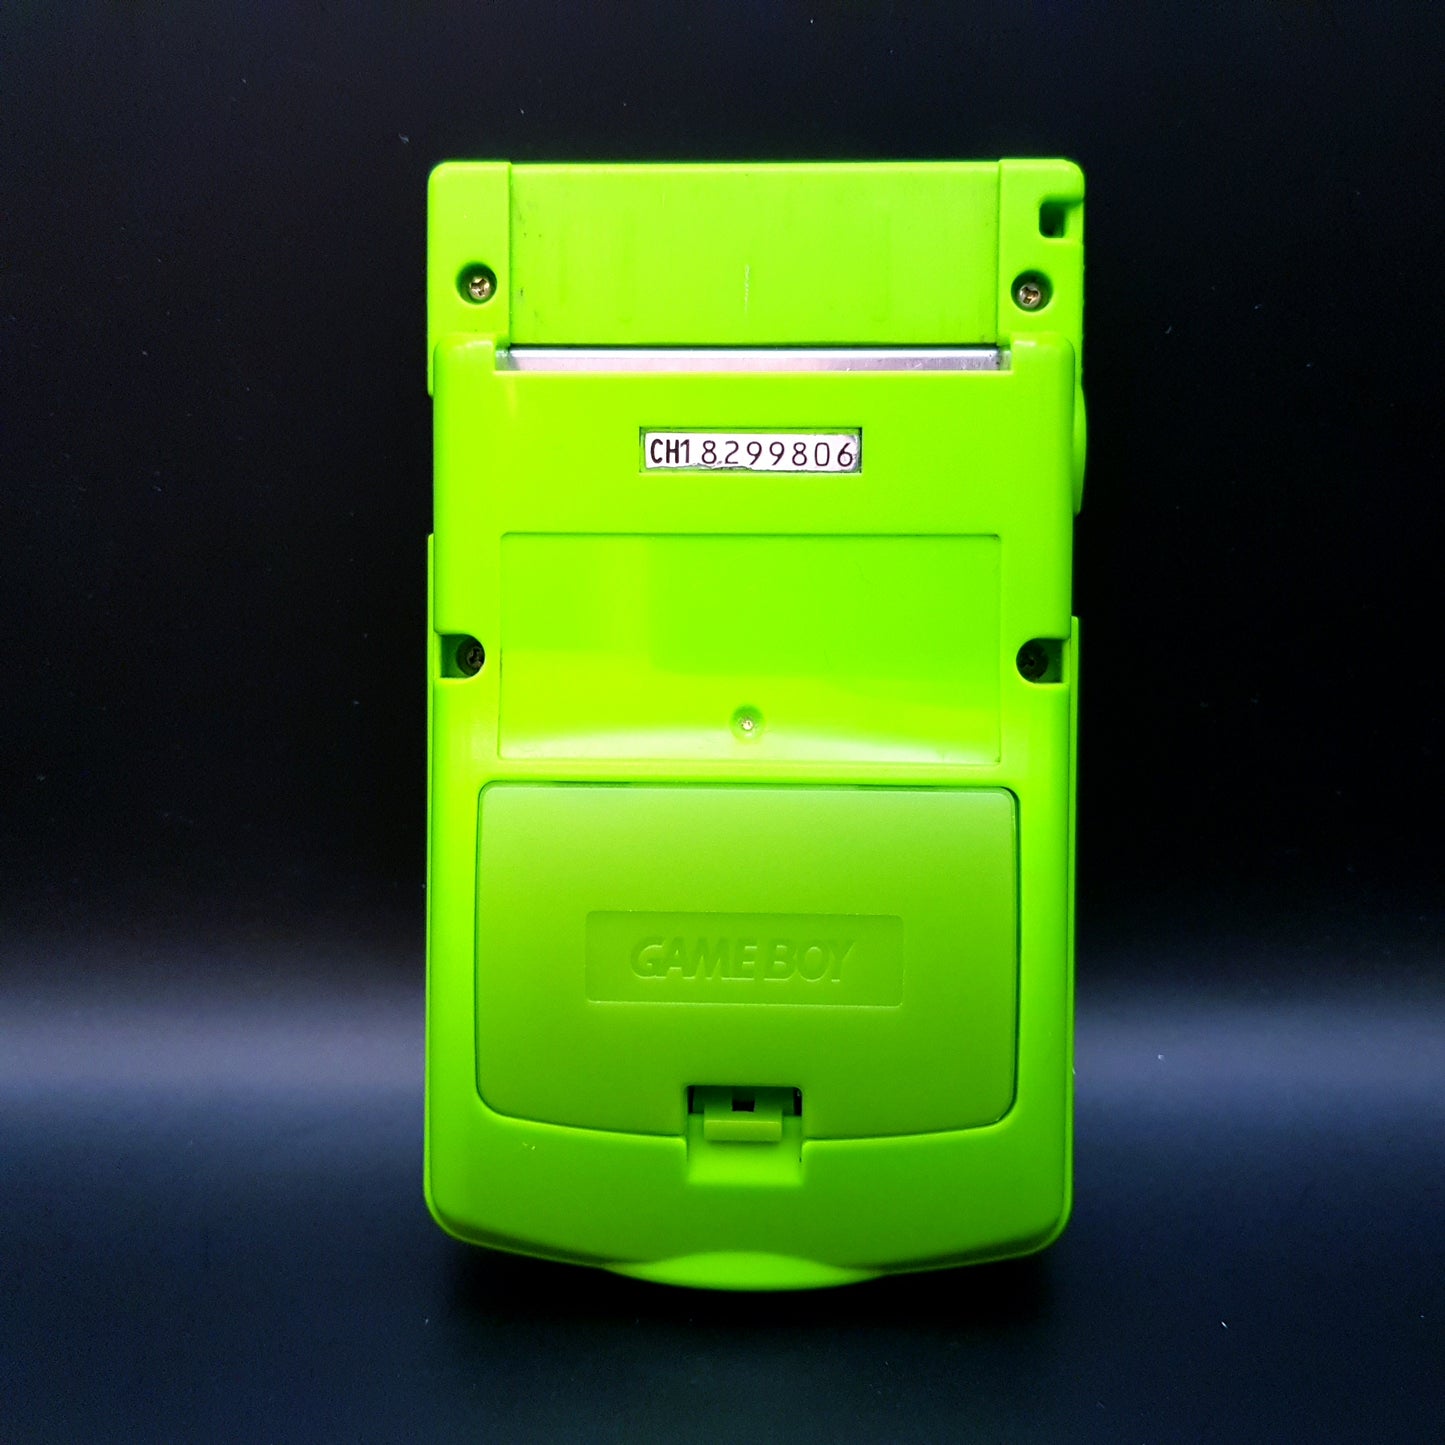 Nintendo Gameboy Color grün - sehr guter Zustand